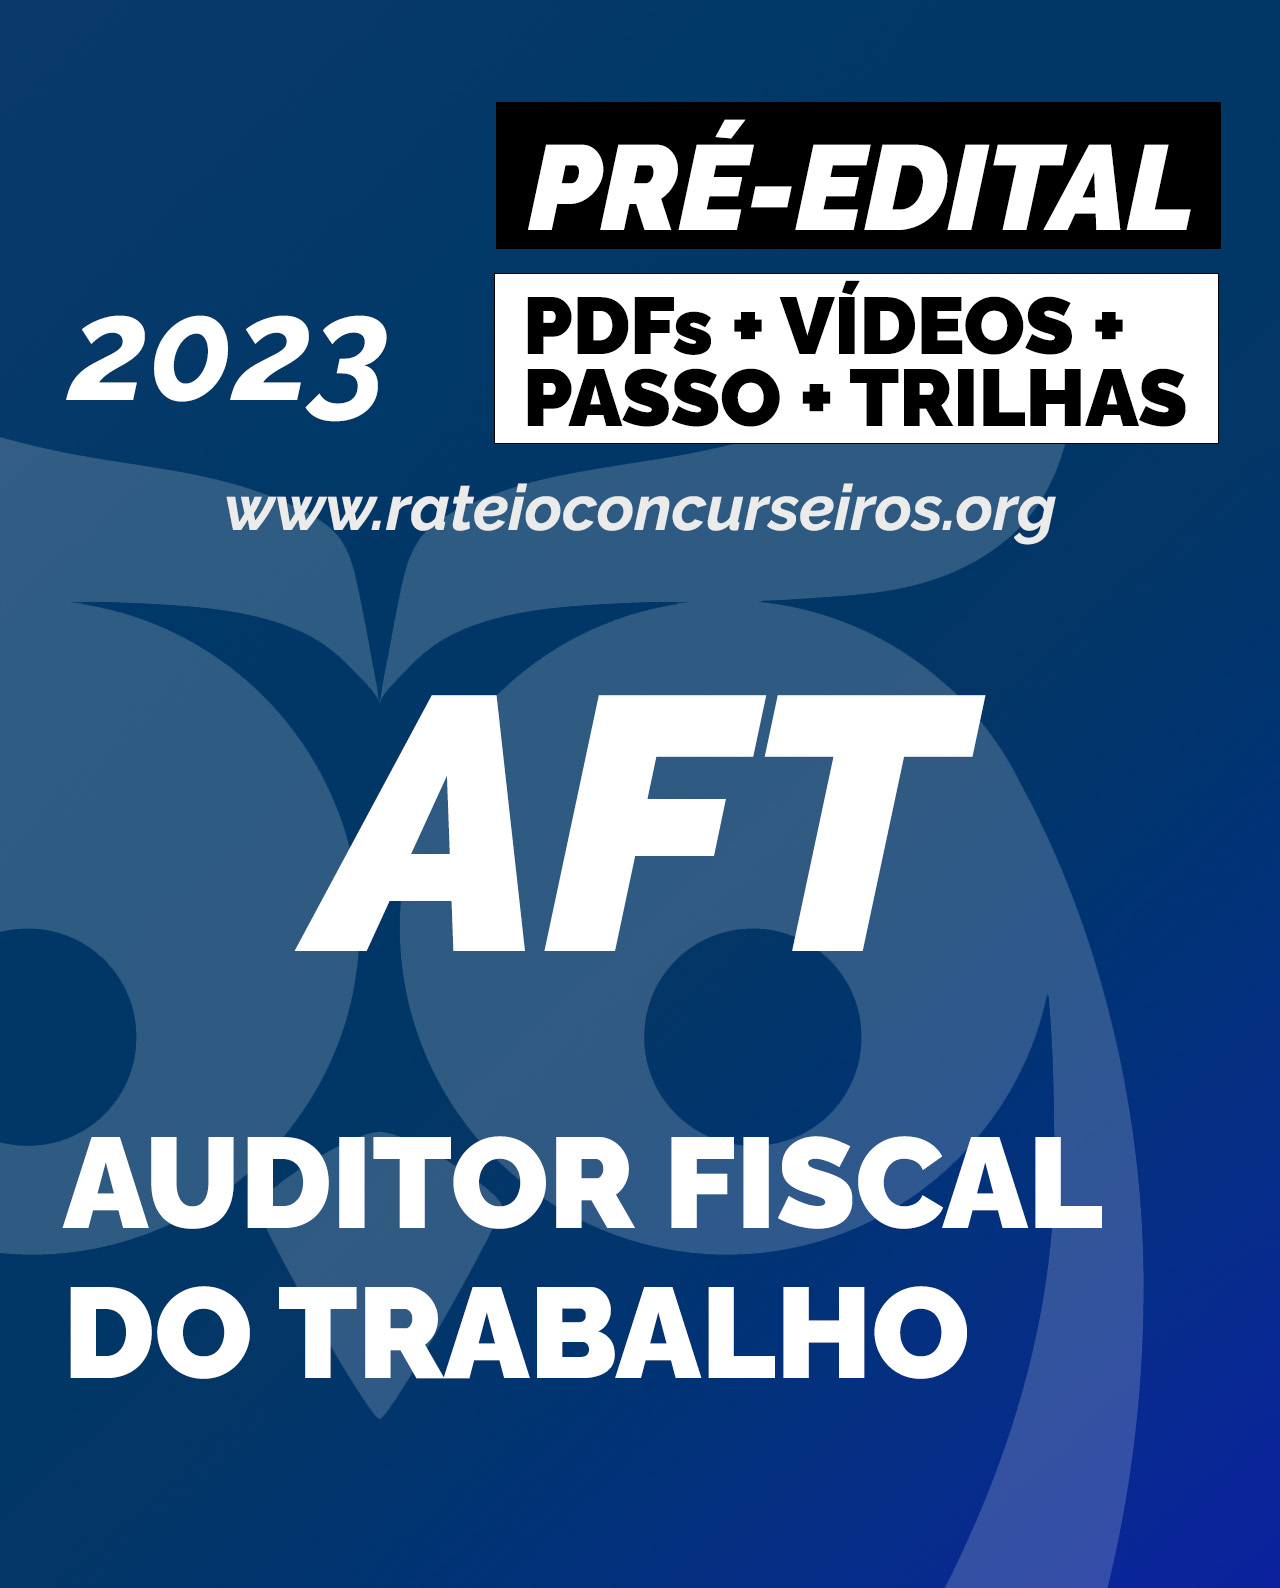 Rateio AFT Auditor Fiscal do Trabalho Préedital 2023